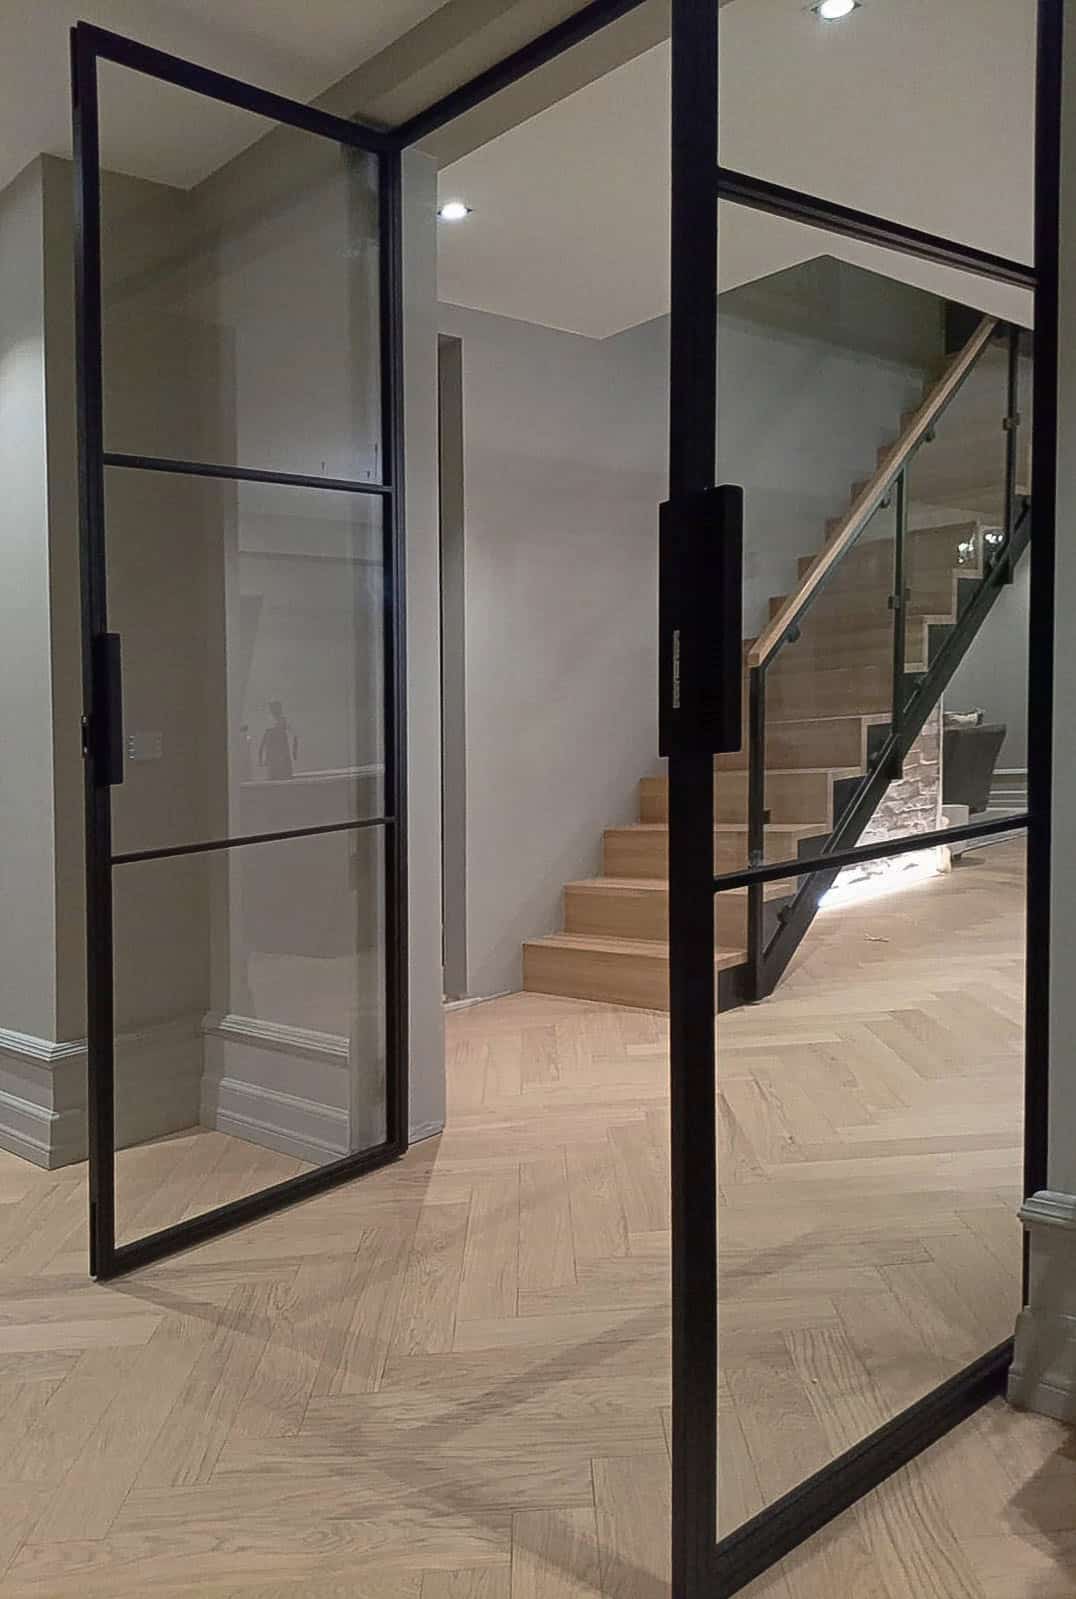 Lofttür zweiflügelig, Tür aus Glas mit Stahl schwarz, große Glas-Tür für Haus, Treppe, Diele, elegante Tür für großen Flur